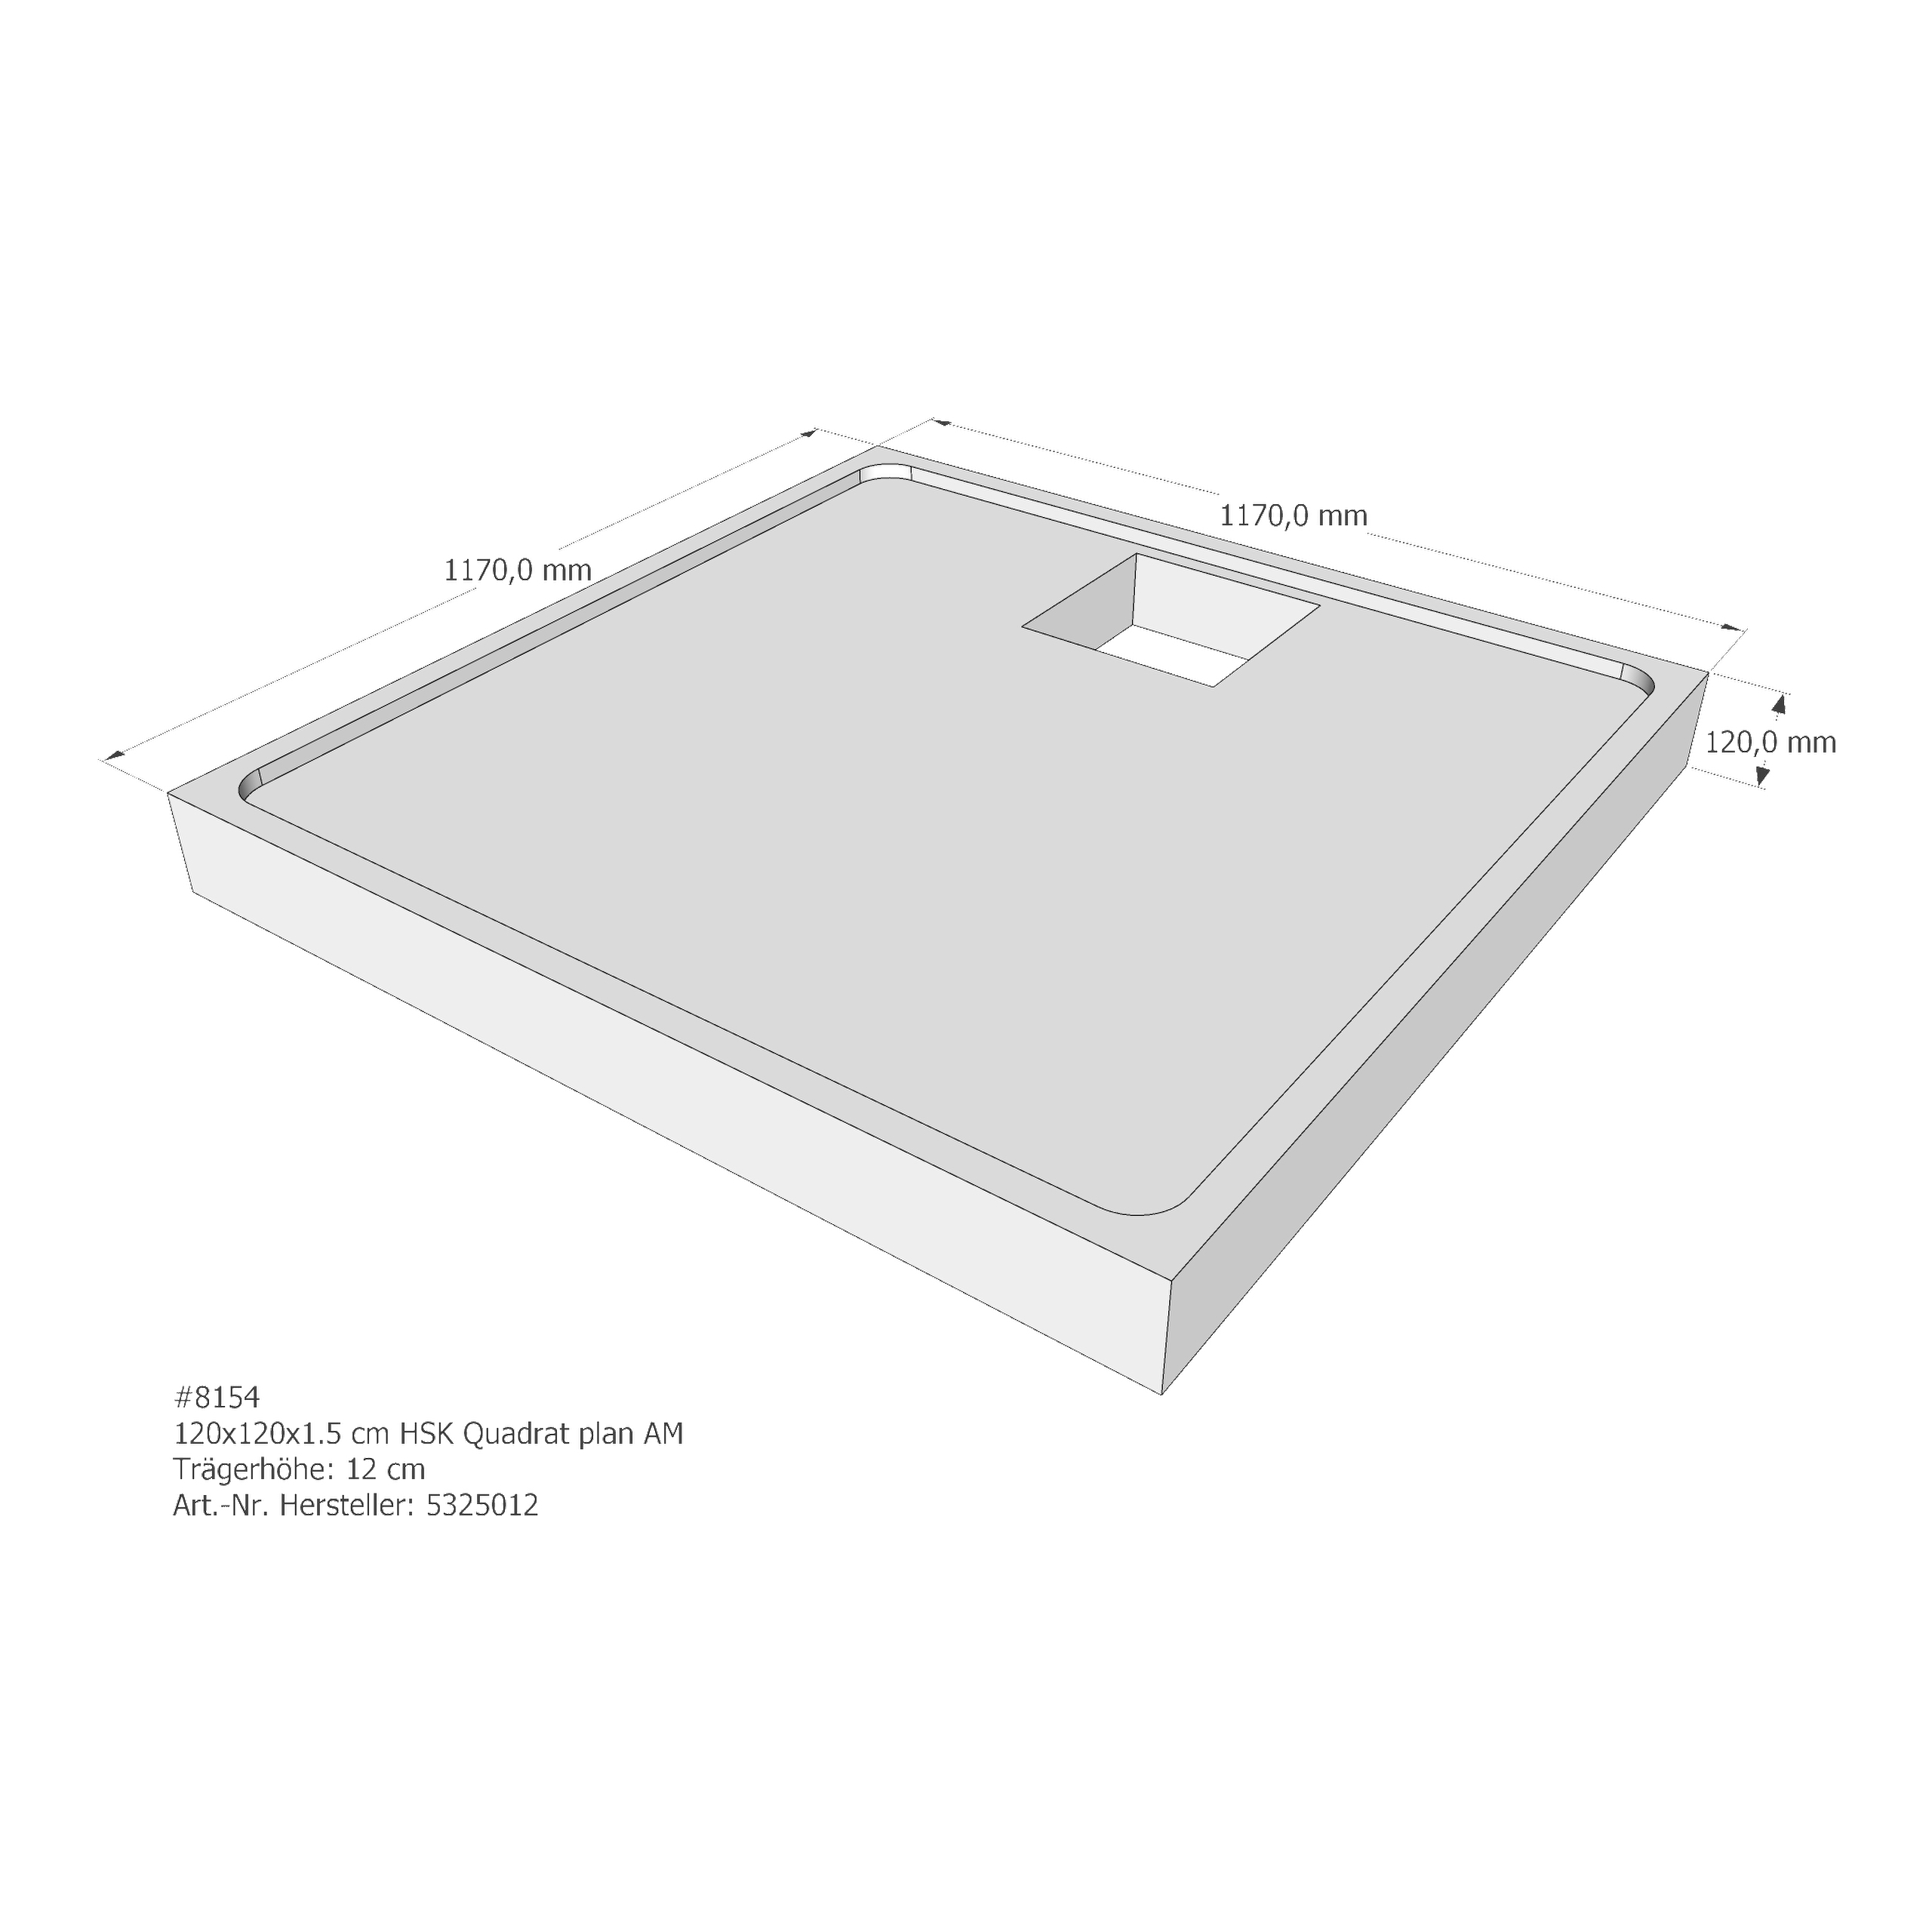 Duschwannenträger HSK Quadrat plan 120x120x1,5 cm AM210